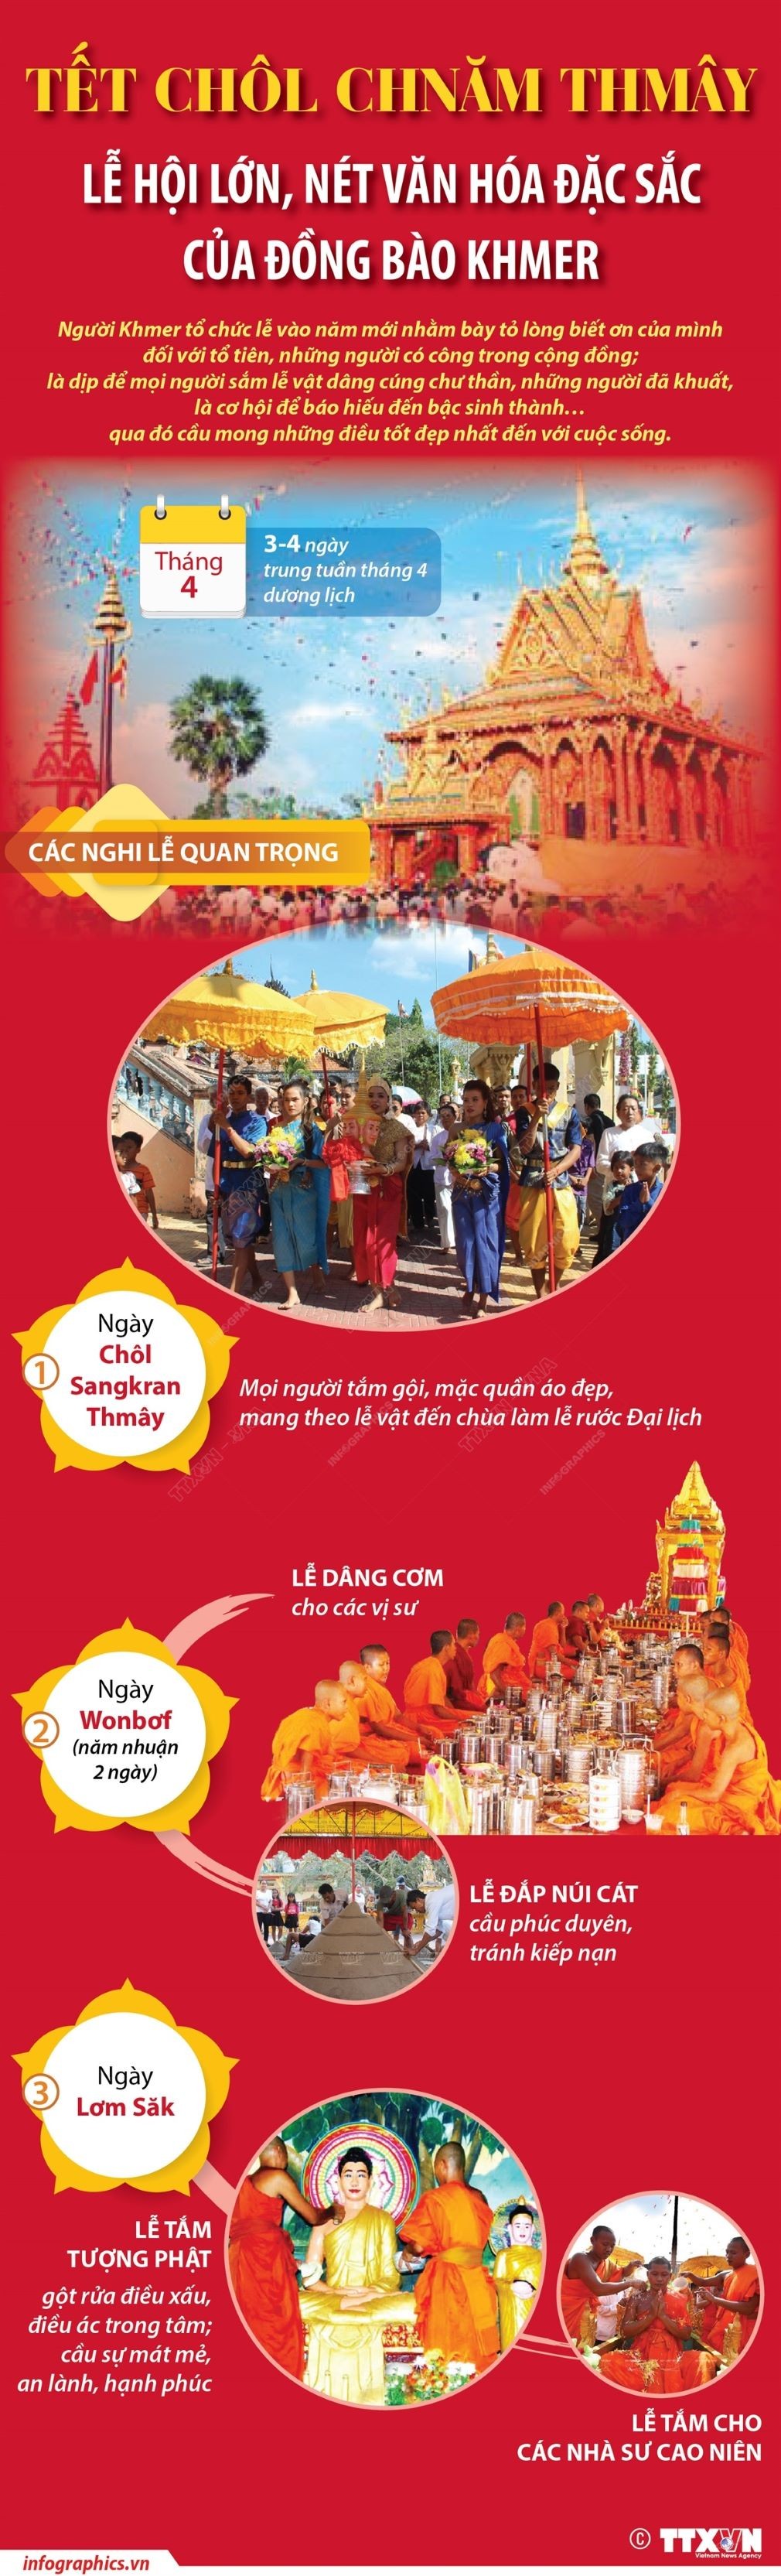 Tết Chol Chnam Thmay - Nét văn hóa đặc sắc của đồng bào Khmer